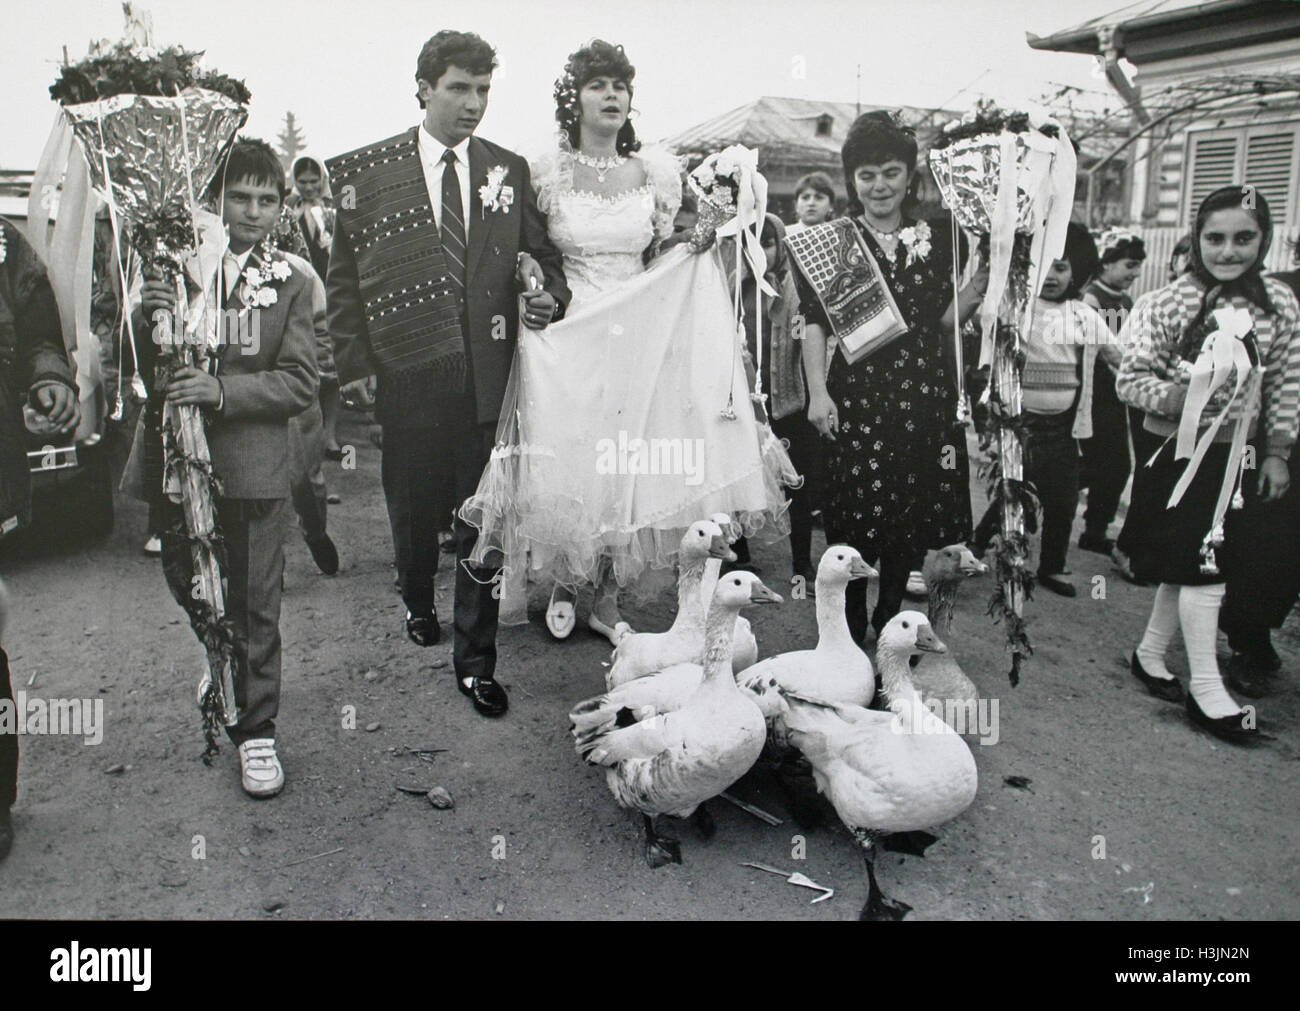 Après la chute de Nicolae Ceaușescu en décembre 1989 en Roumanie, les plus riches de la classe les gens ordinaires étaient des paysans (pas un terme péjoratif) parce qu'ils contrôlaient la production de denrées alimentaires. Dans ce street parade de mariage dans un village près de Bucarest un troupeau d'oies se faire attraper vers le haut avec la fête de mariage. Banque D'Images